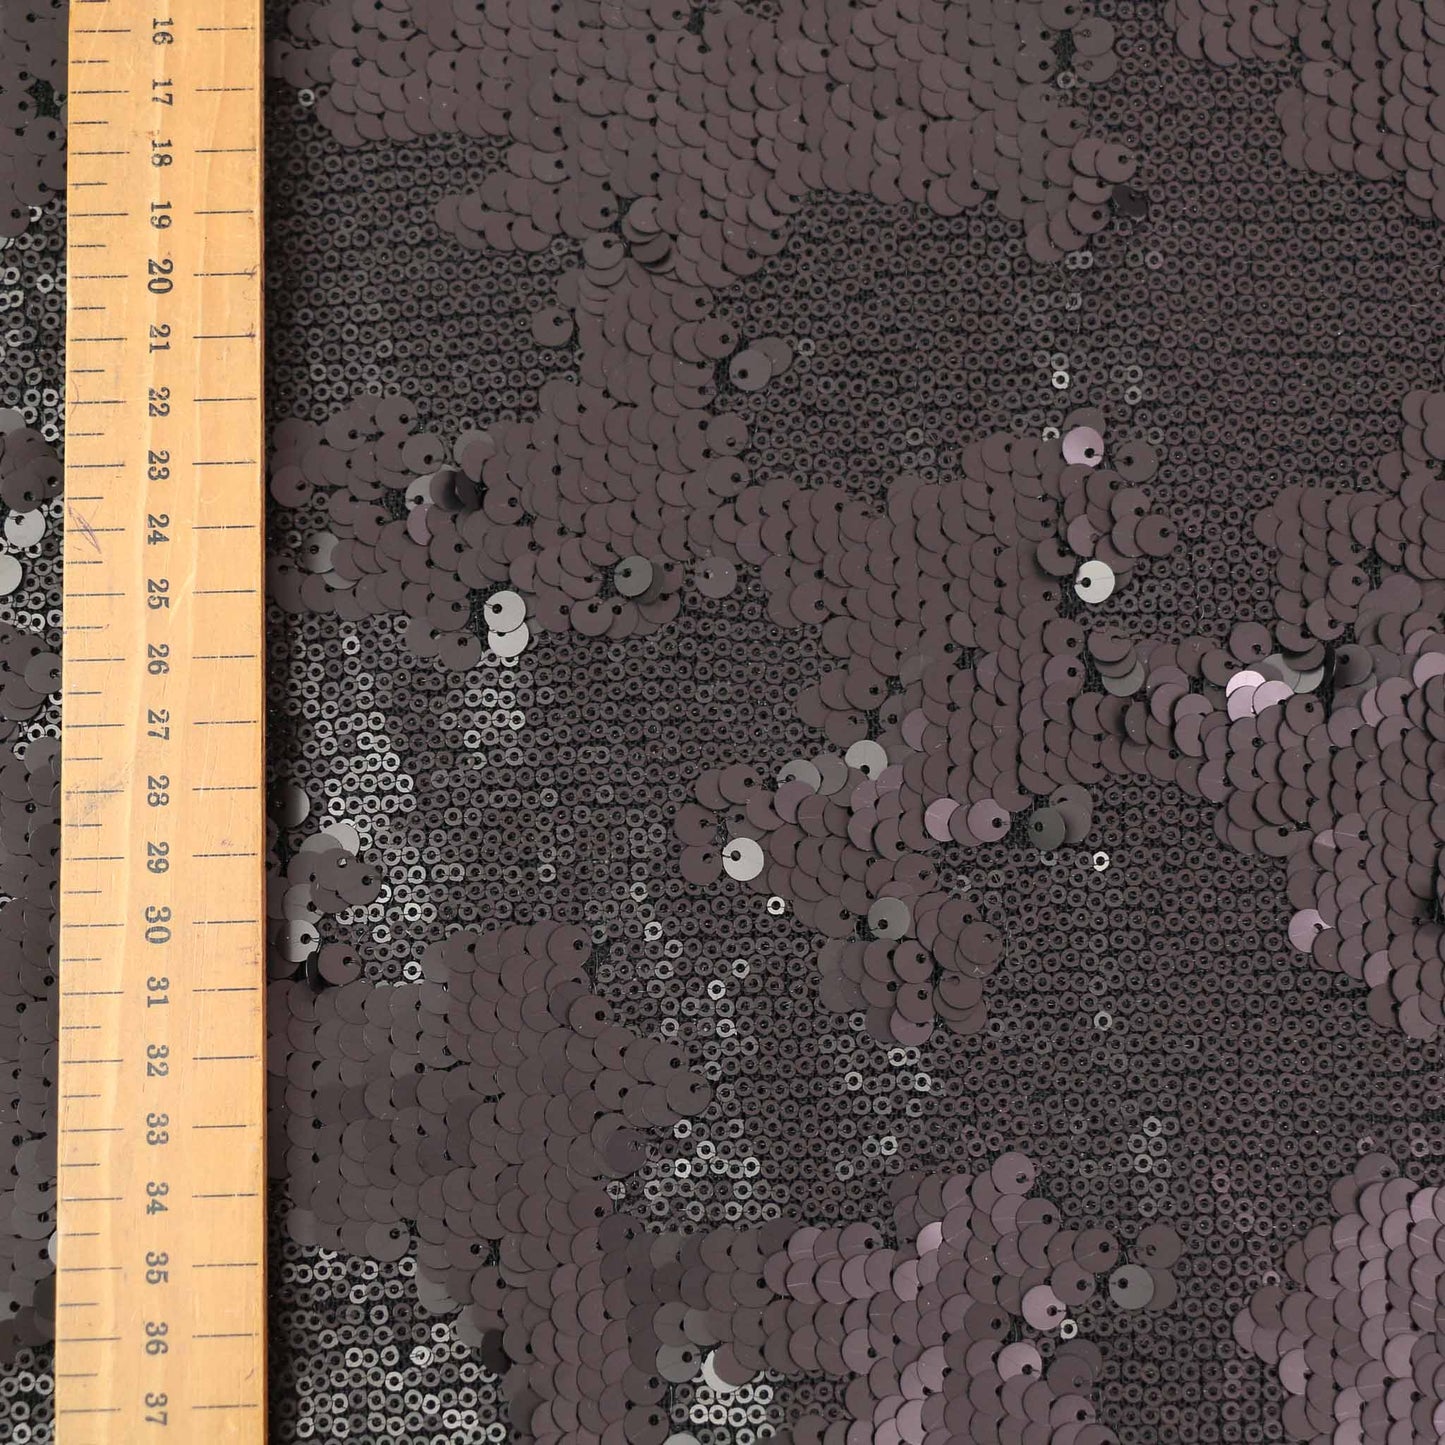 Sequin Fabric - Mauve, Black